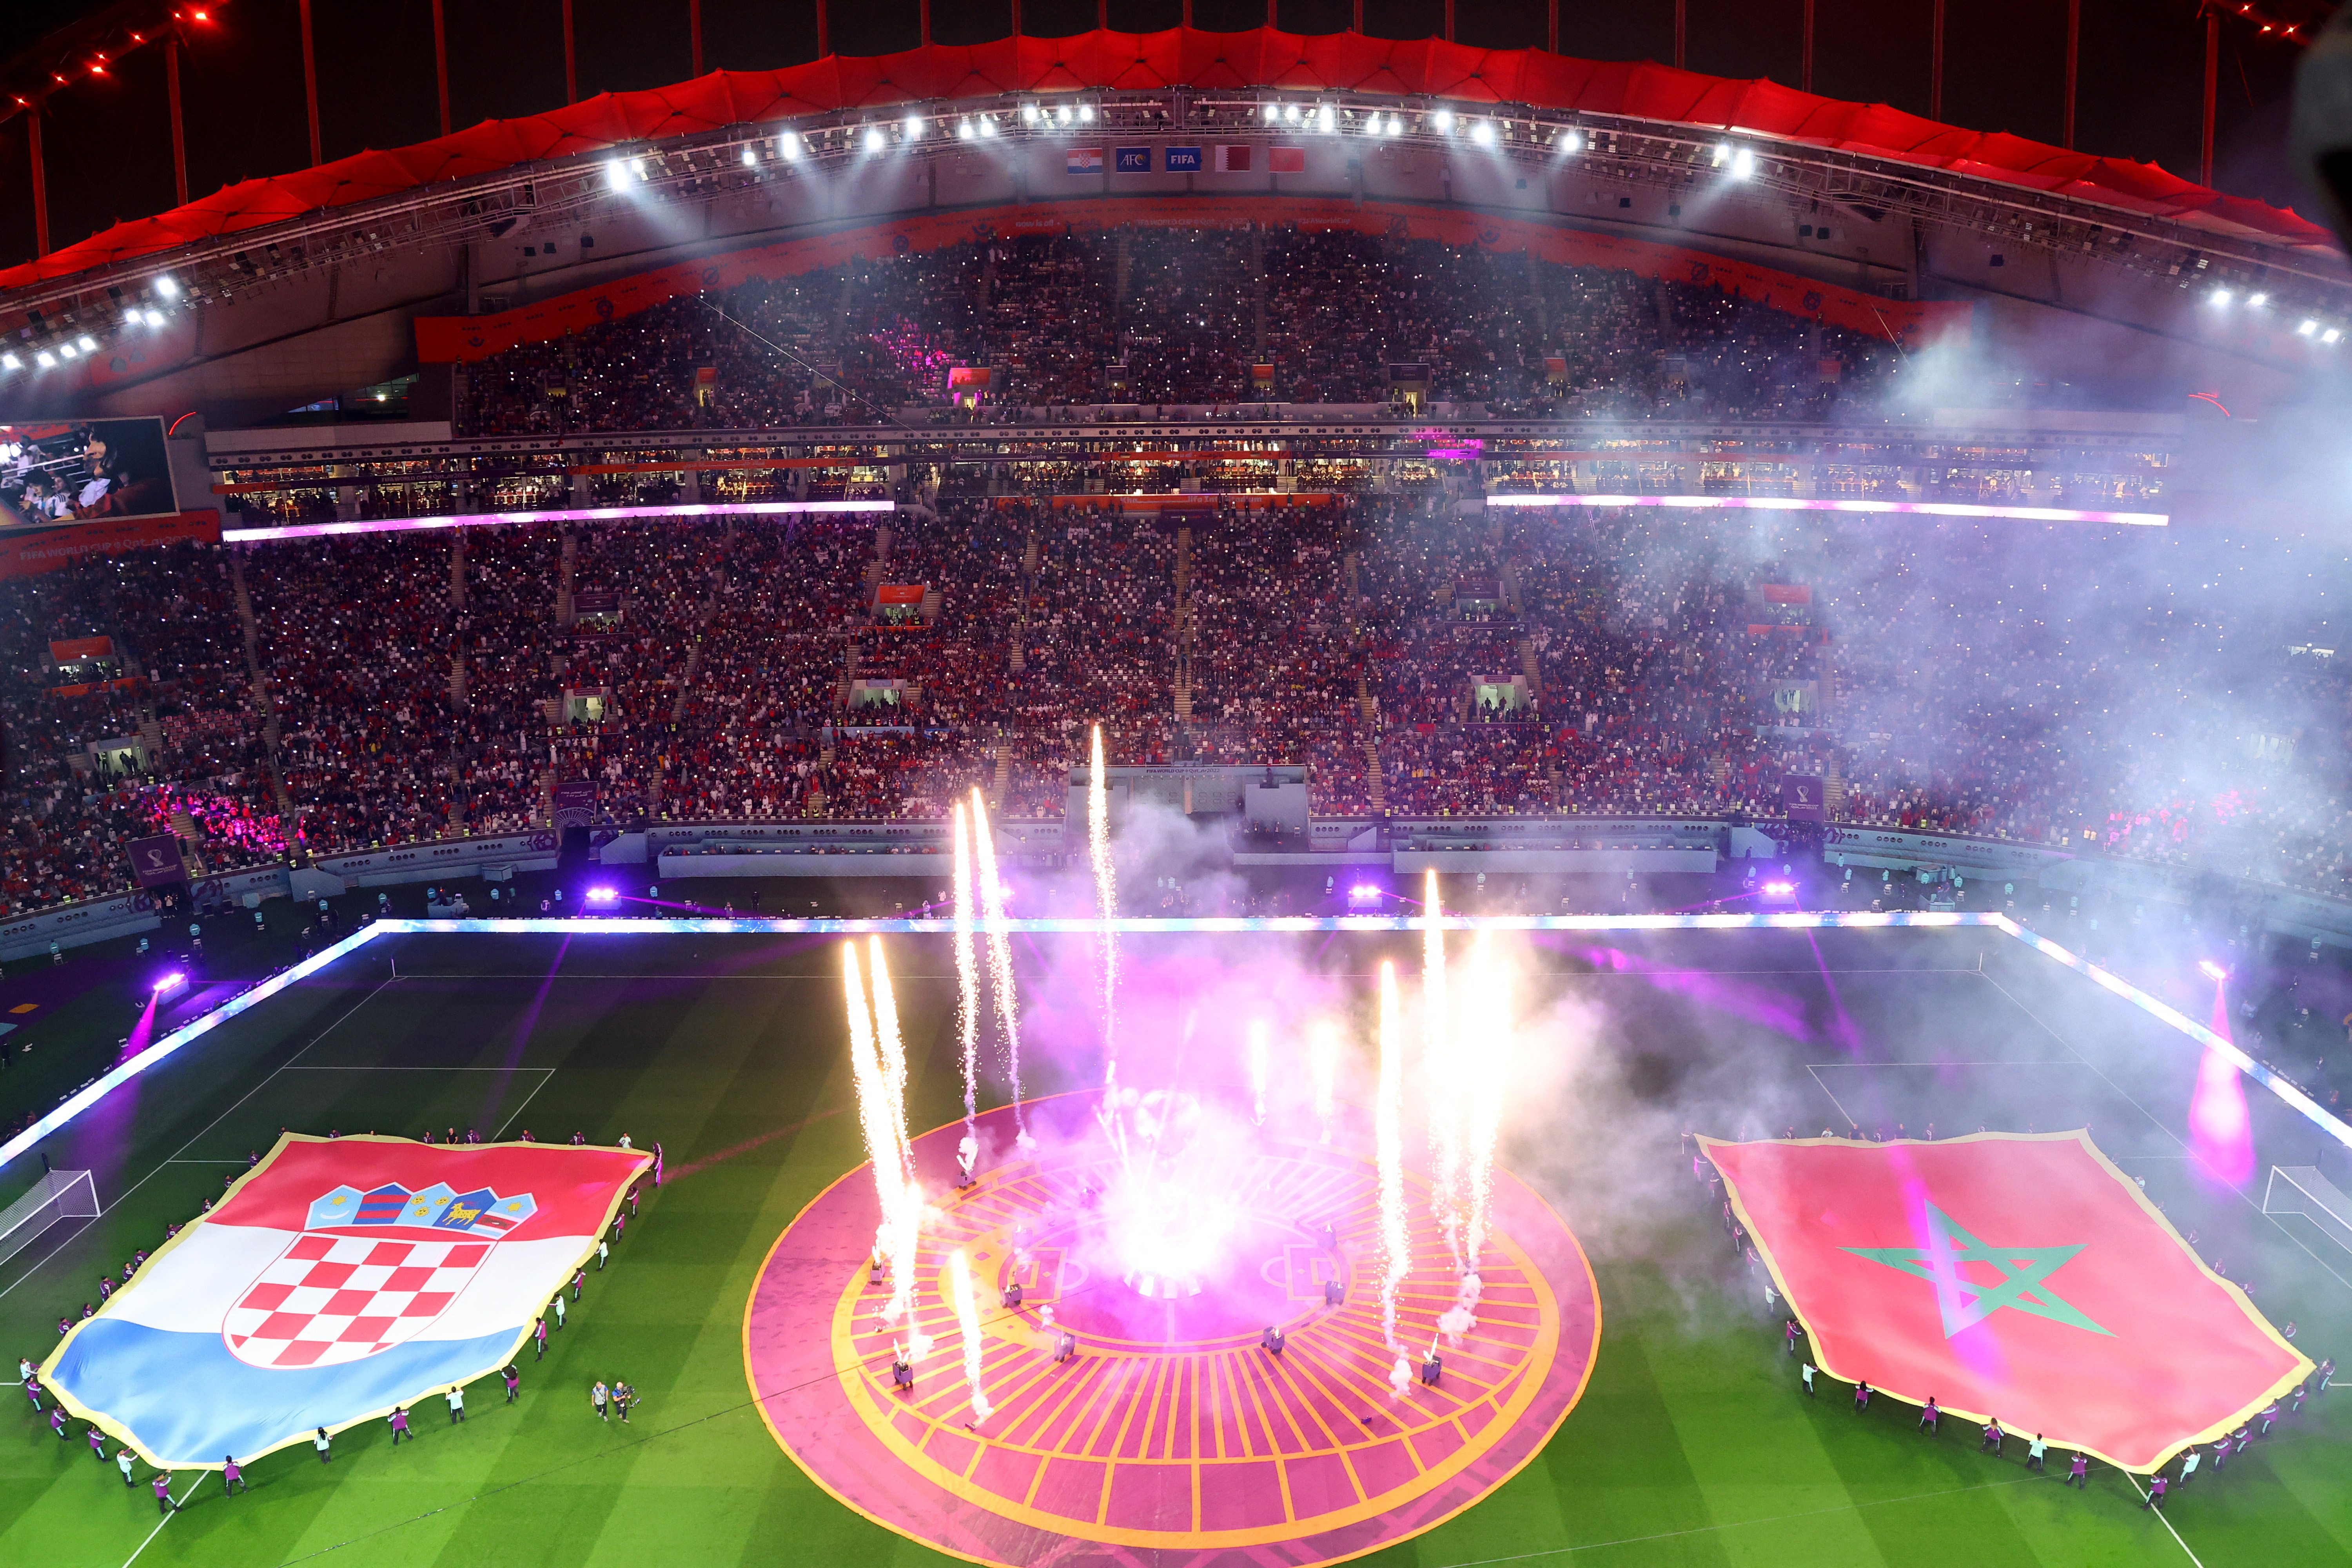 Show de fuegos artificiales en el Khalifa Stadium previo al choque entre Marruecos y Croacia por el tercer puesto del Mundial de Qatar 2022 (REUTERS/Fabrizio Bensch)